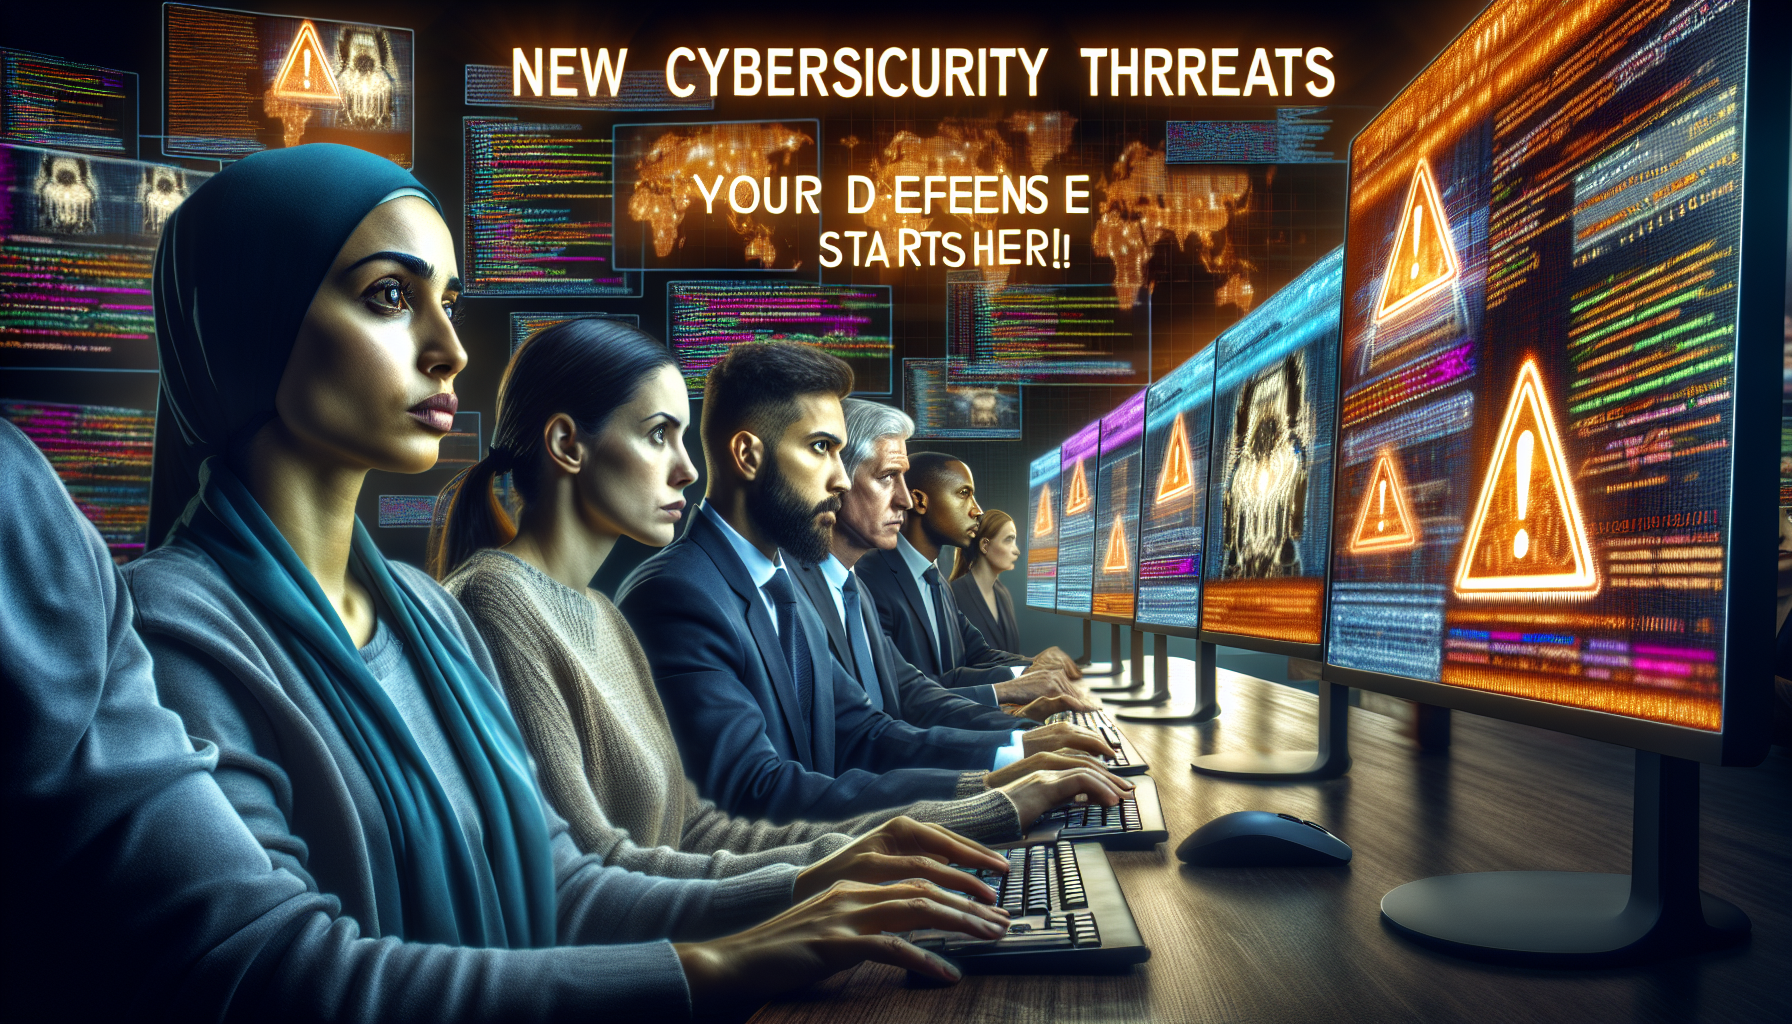 découvrez les nouvelles menaces en cybersécurité et formez-vous à la cybersécurité avec notre formation spécialisée.